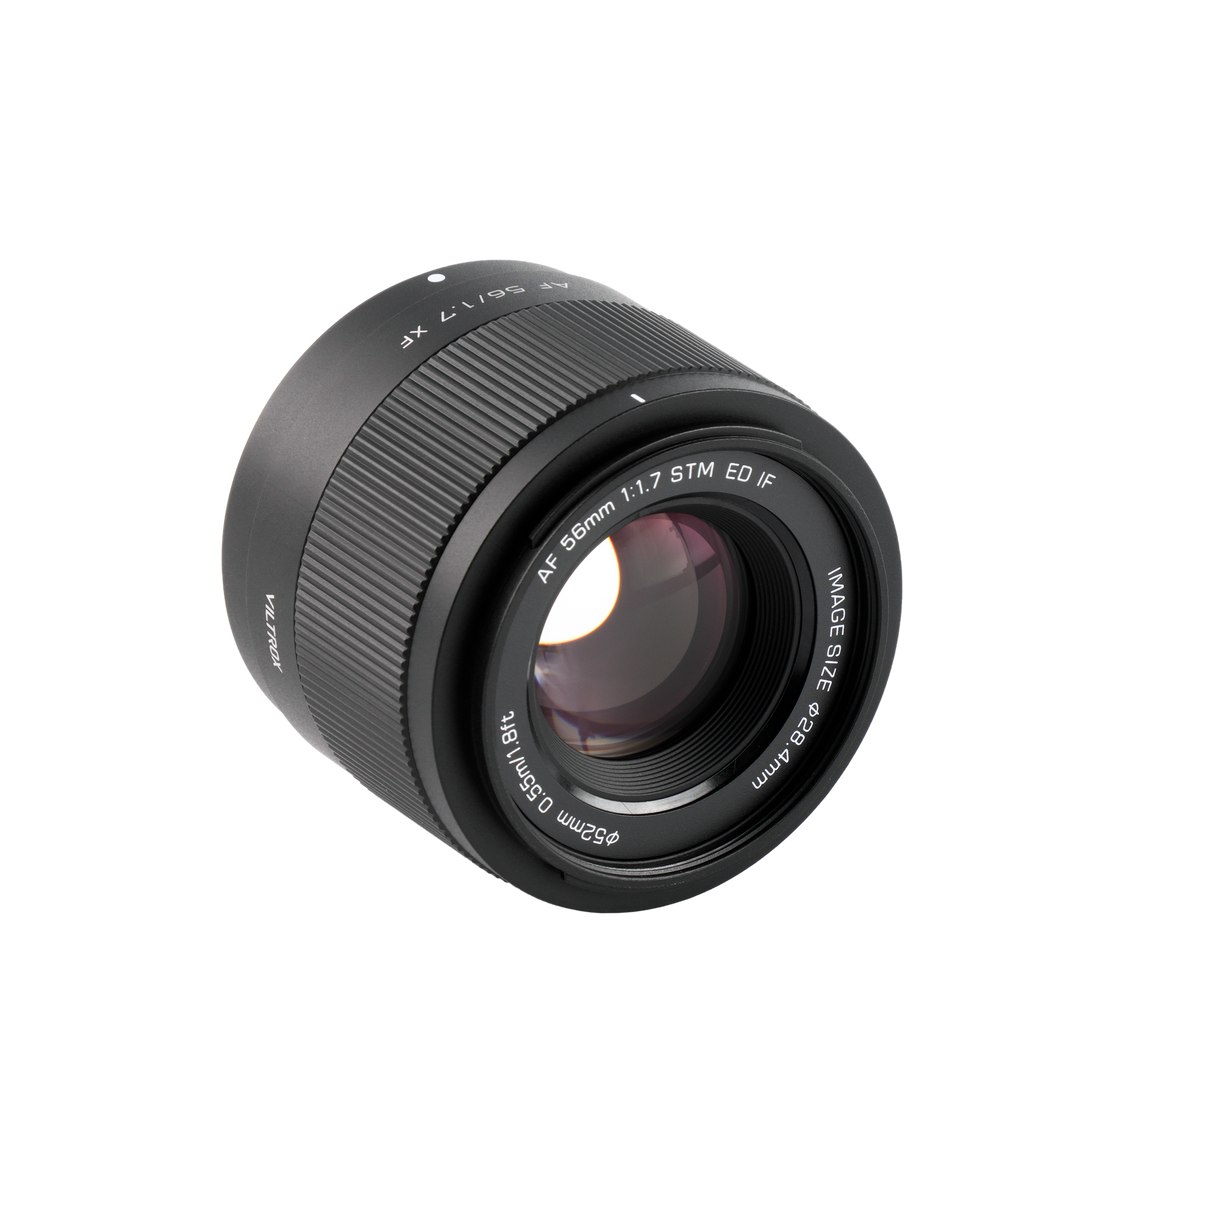 Lens af 56 mm f/1.7 with fuji x-mount